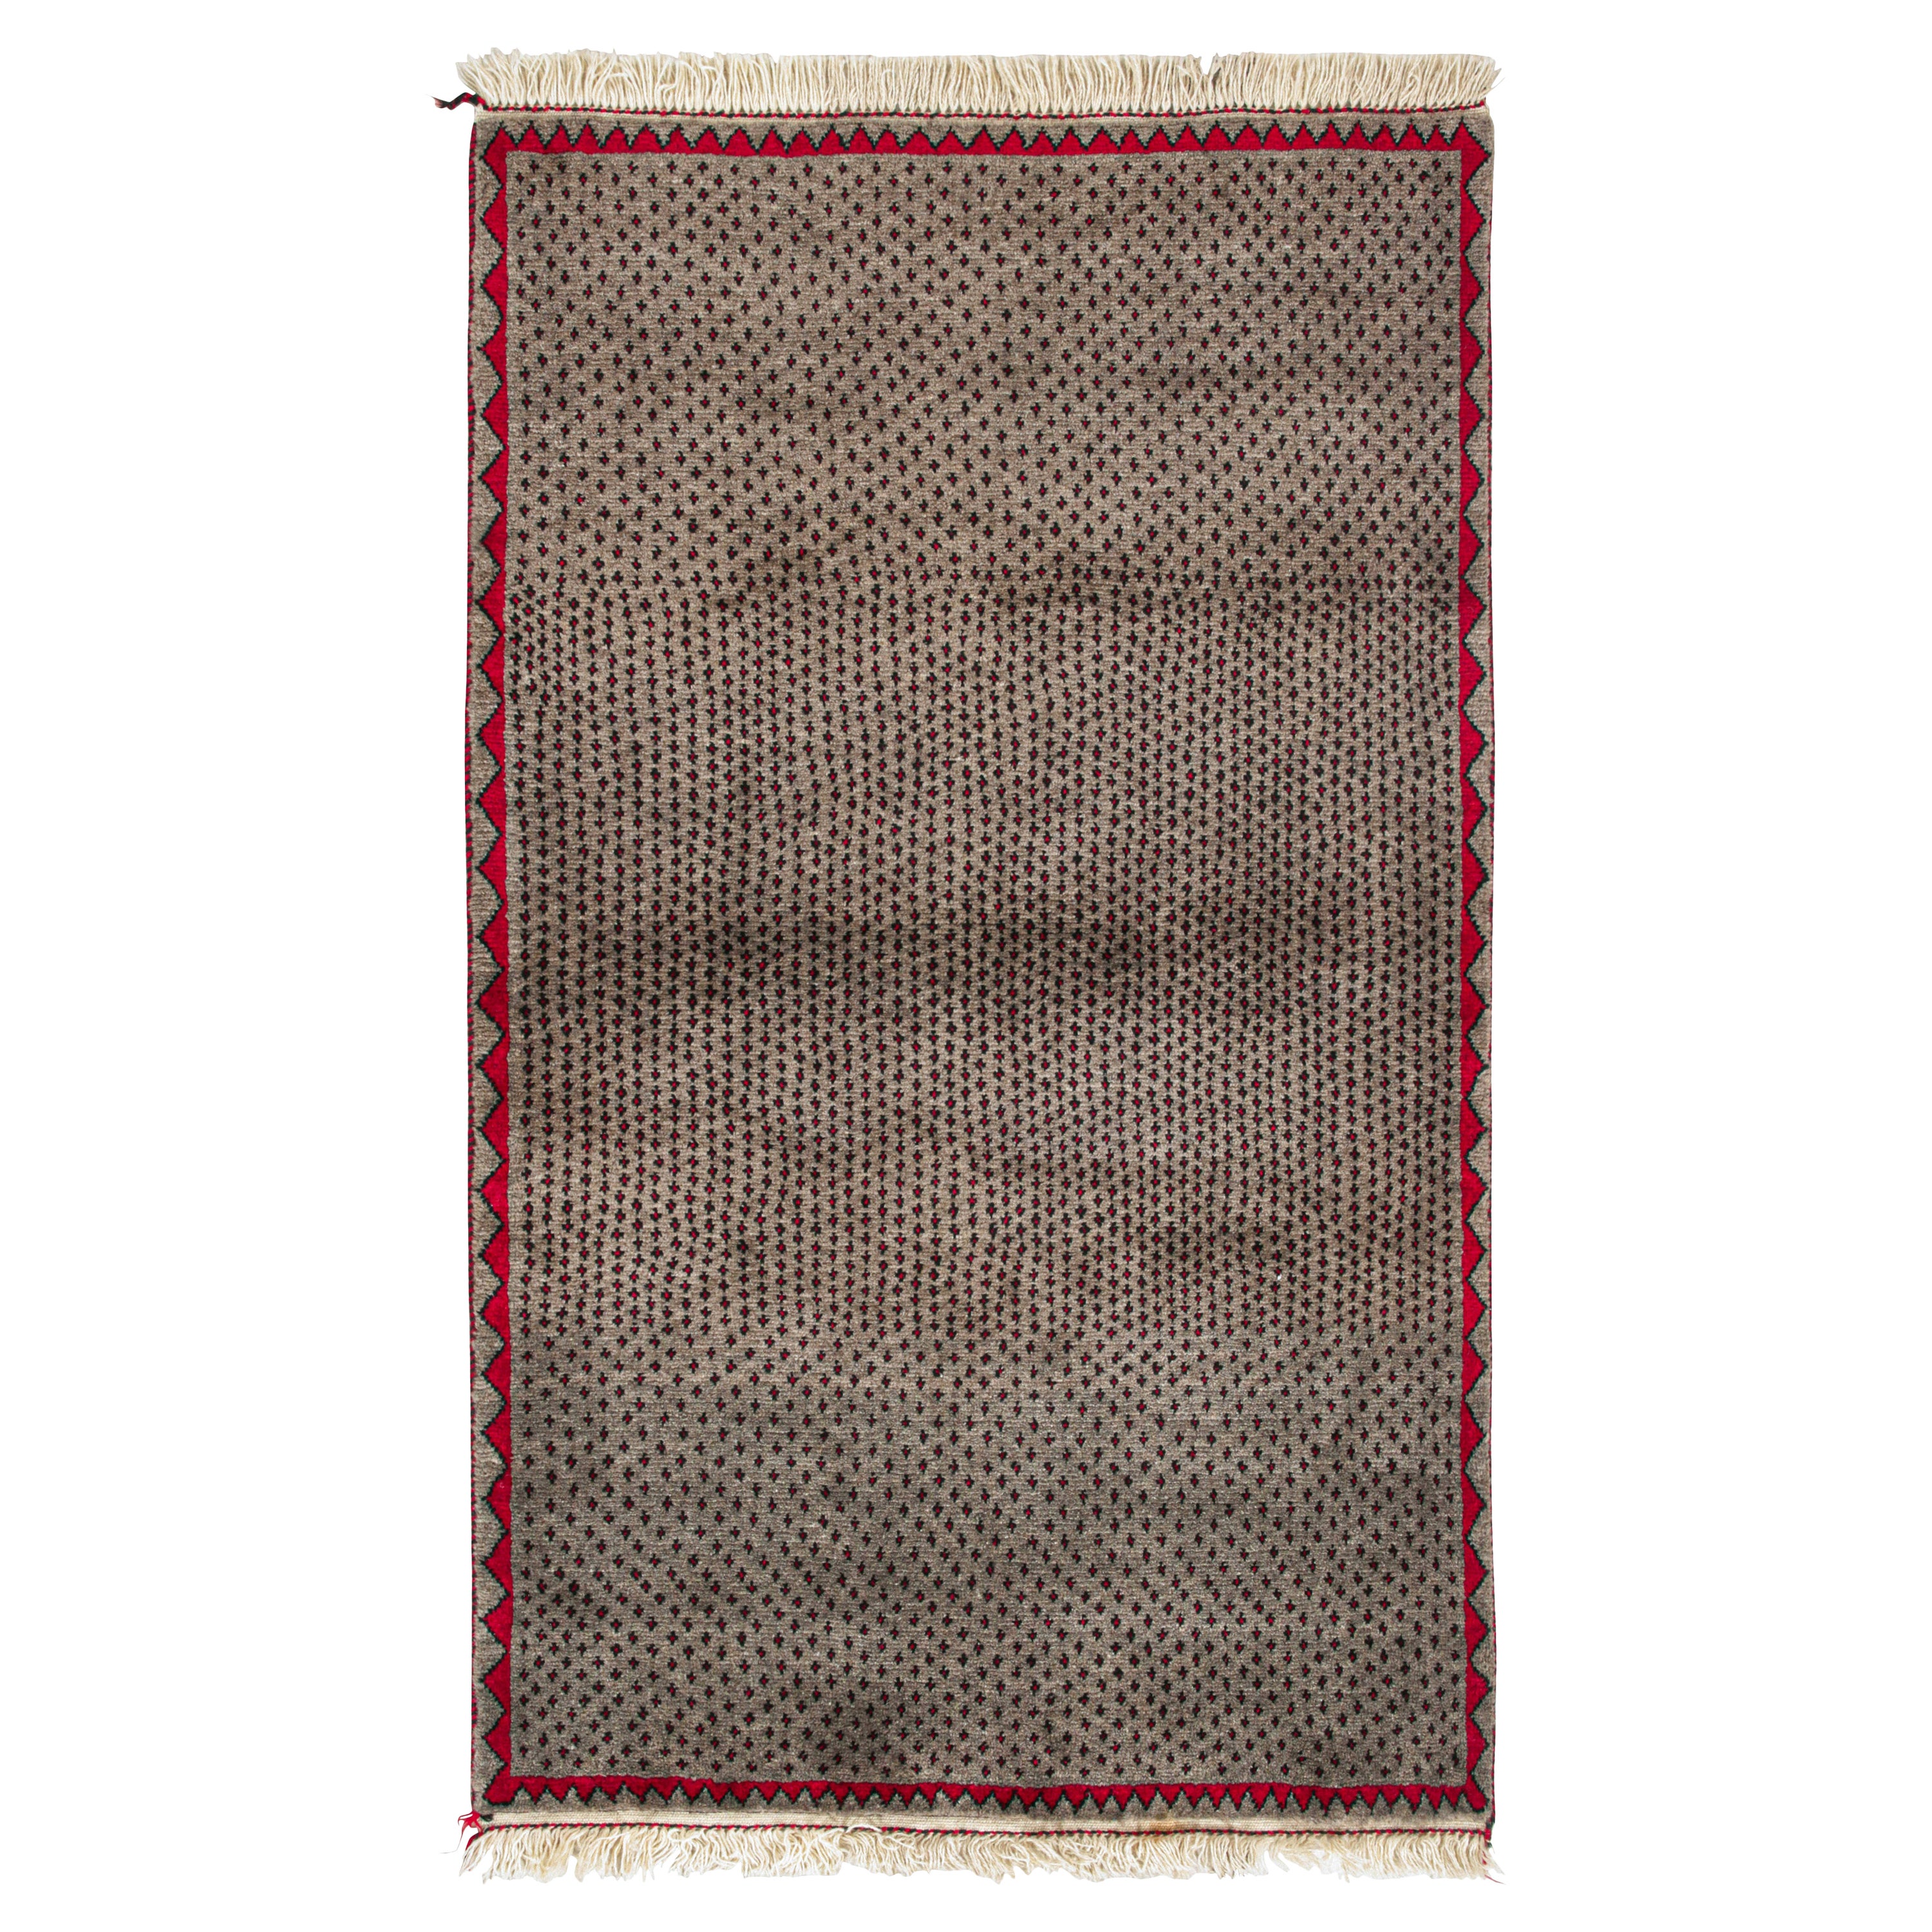 Vintage Persian Rug in Beige with Red & Black Geometric Patterns by Rug & Kilim